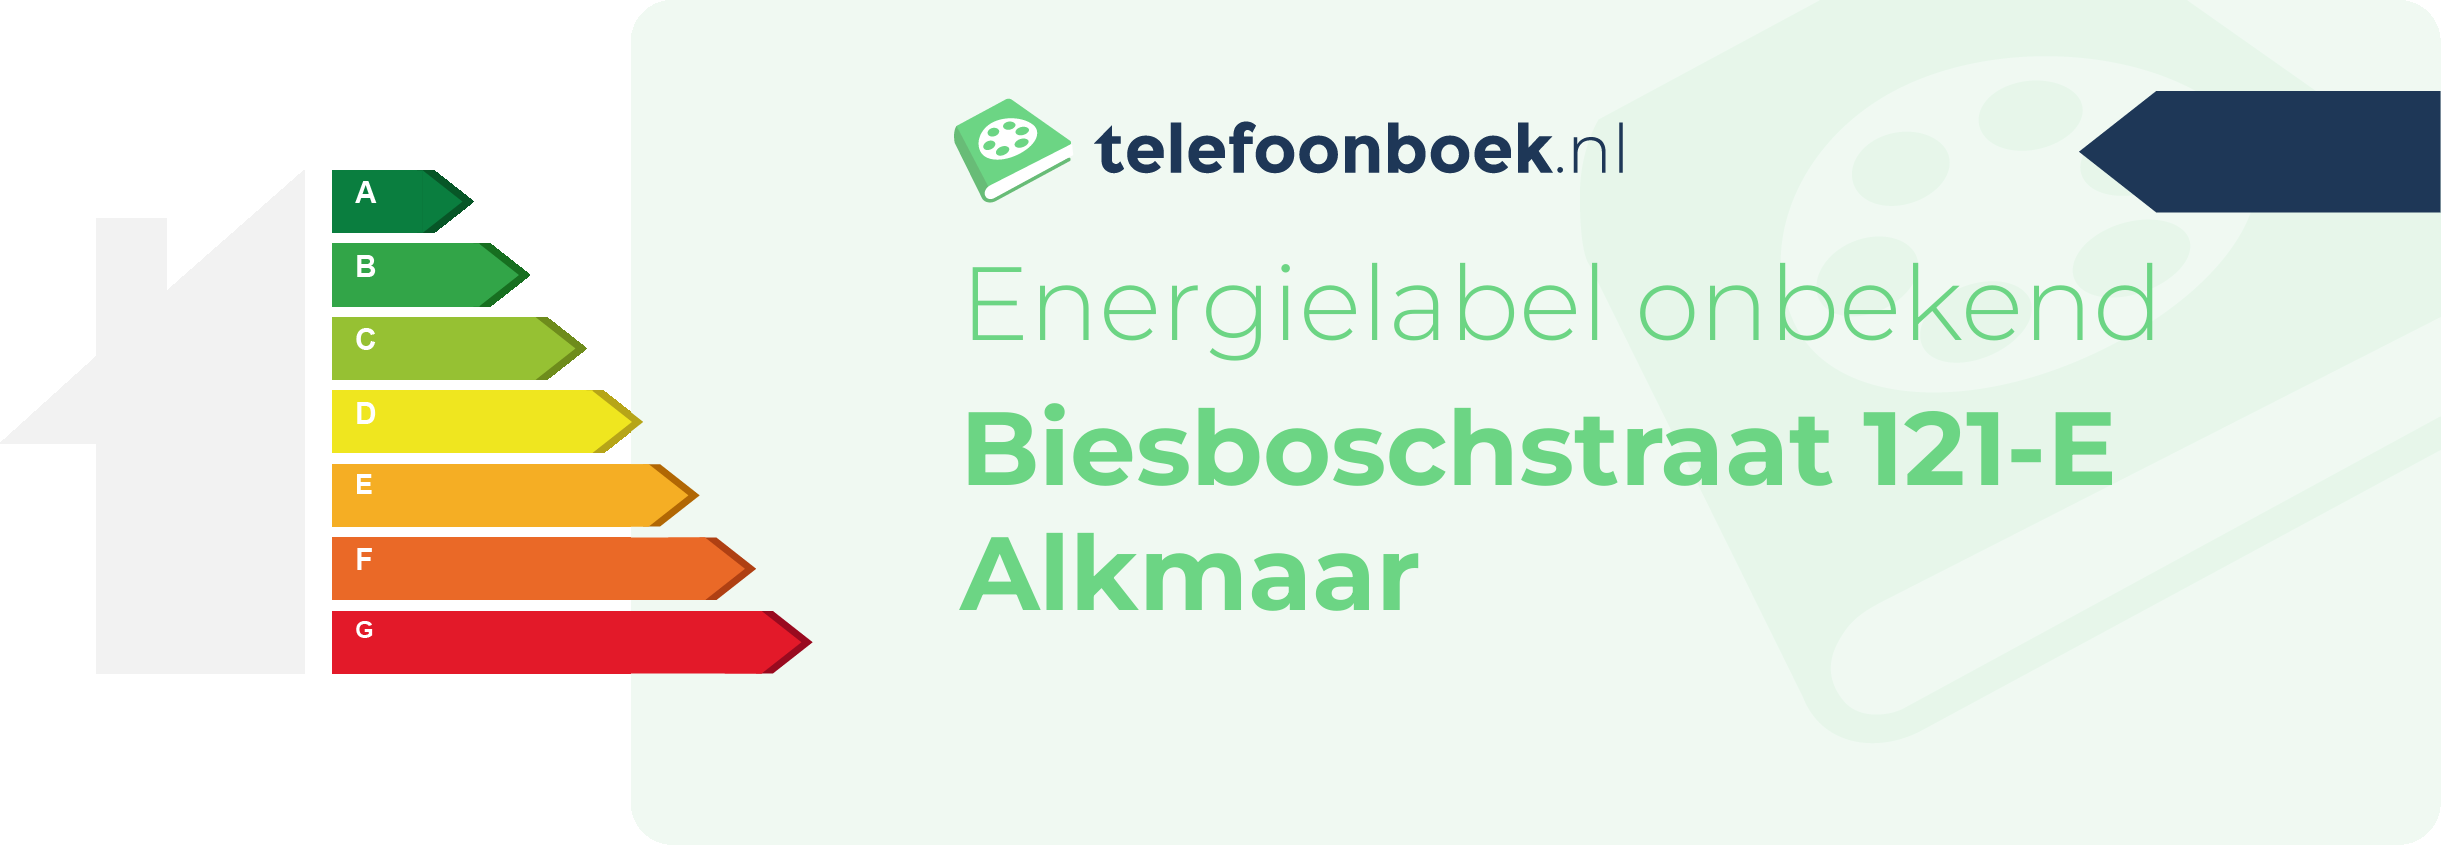 Energielabel Biesboschstraat 121-E Alkmaar